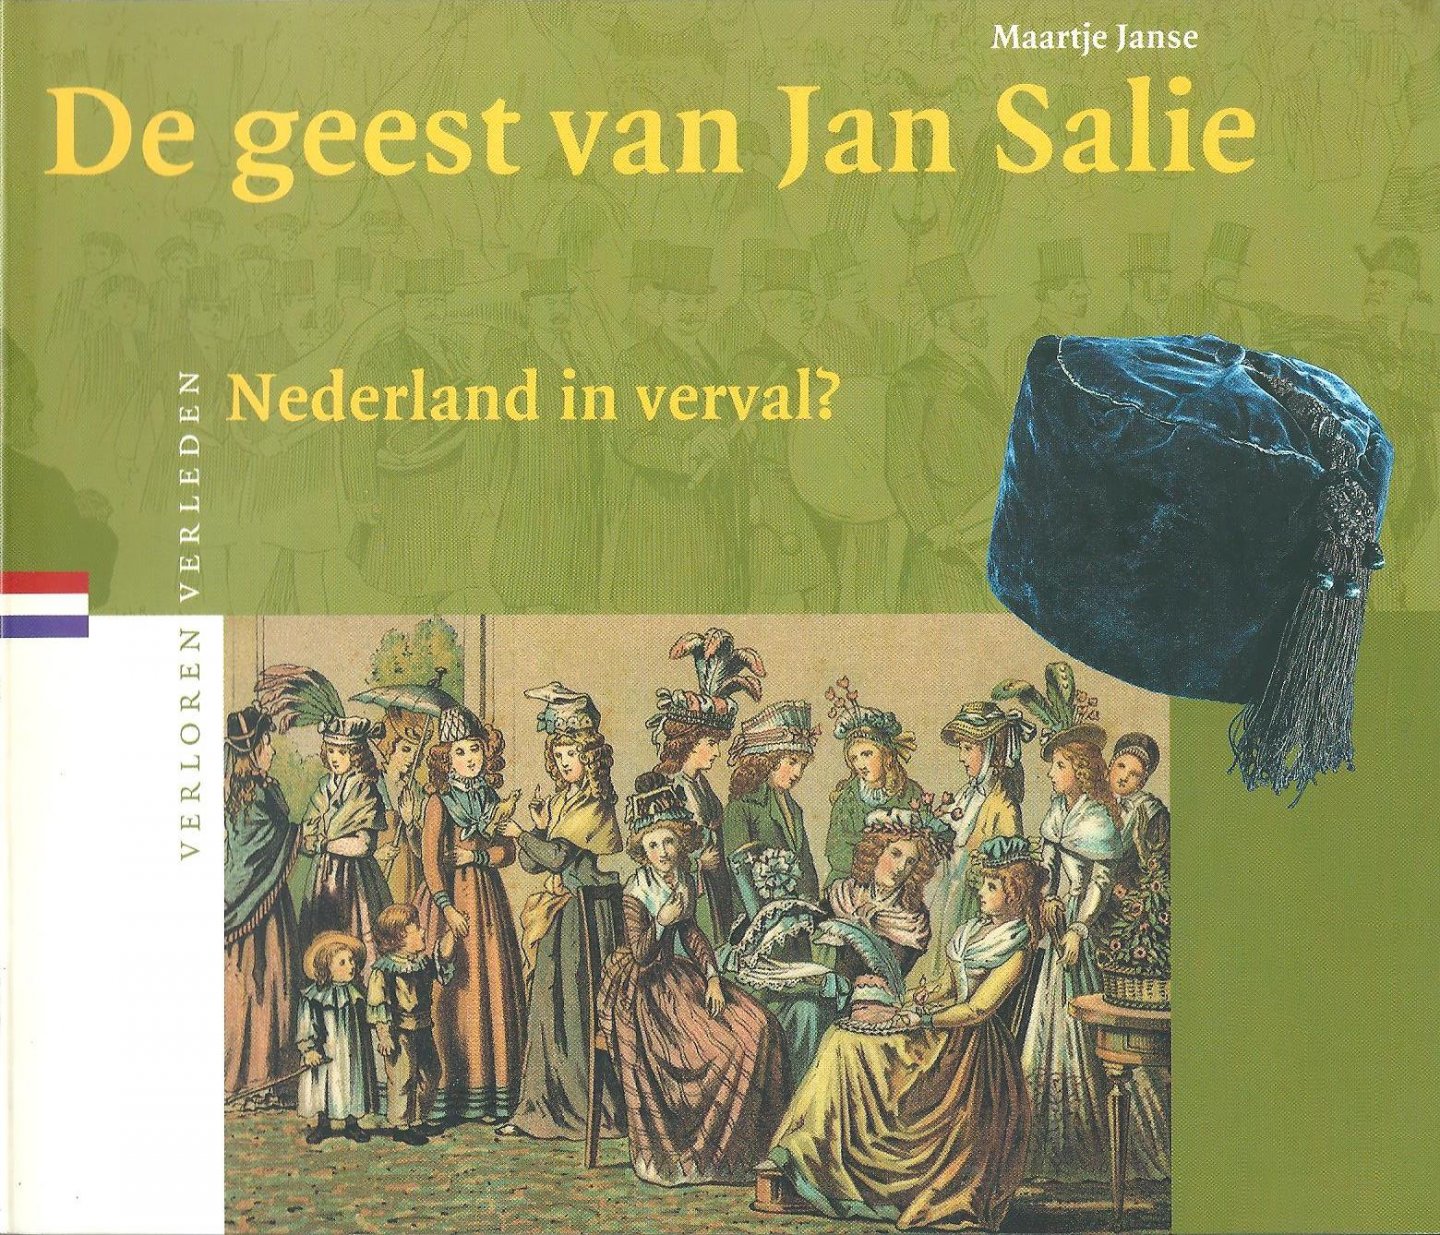 Janse, Maartje - De geest van Jan Salie : Nederland in verval?